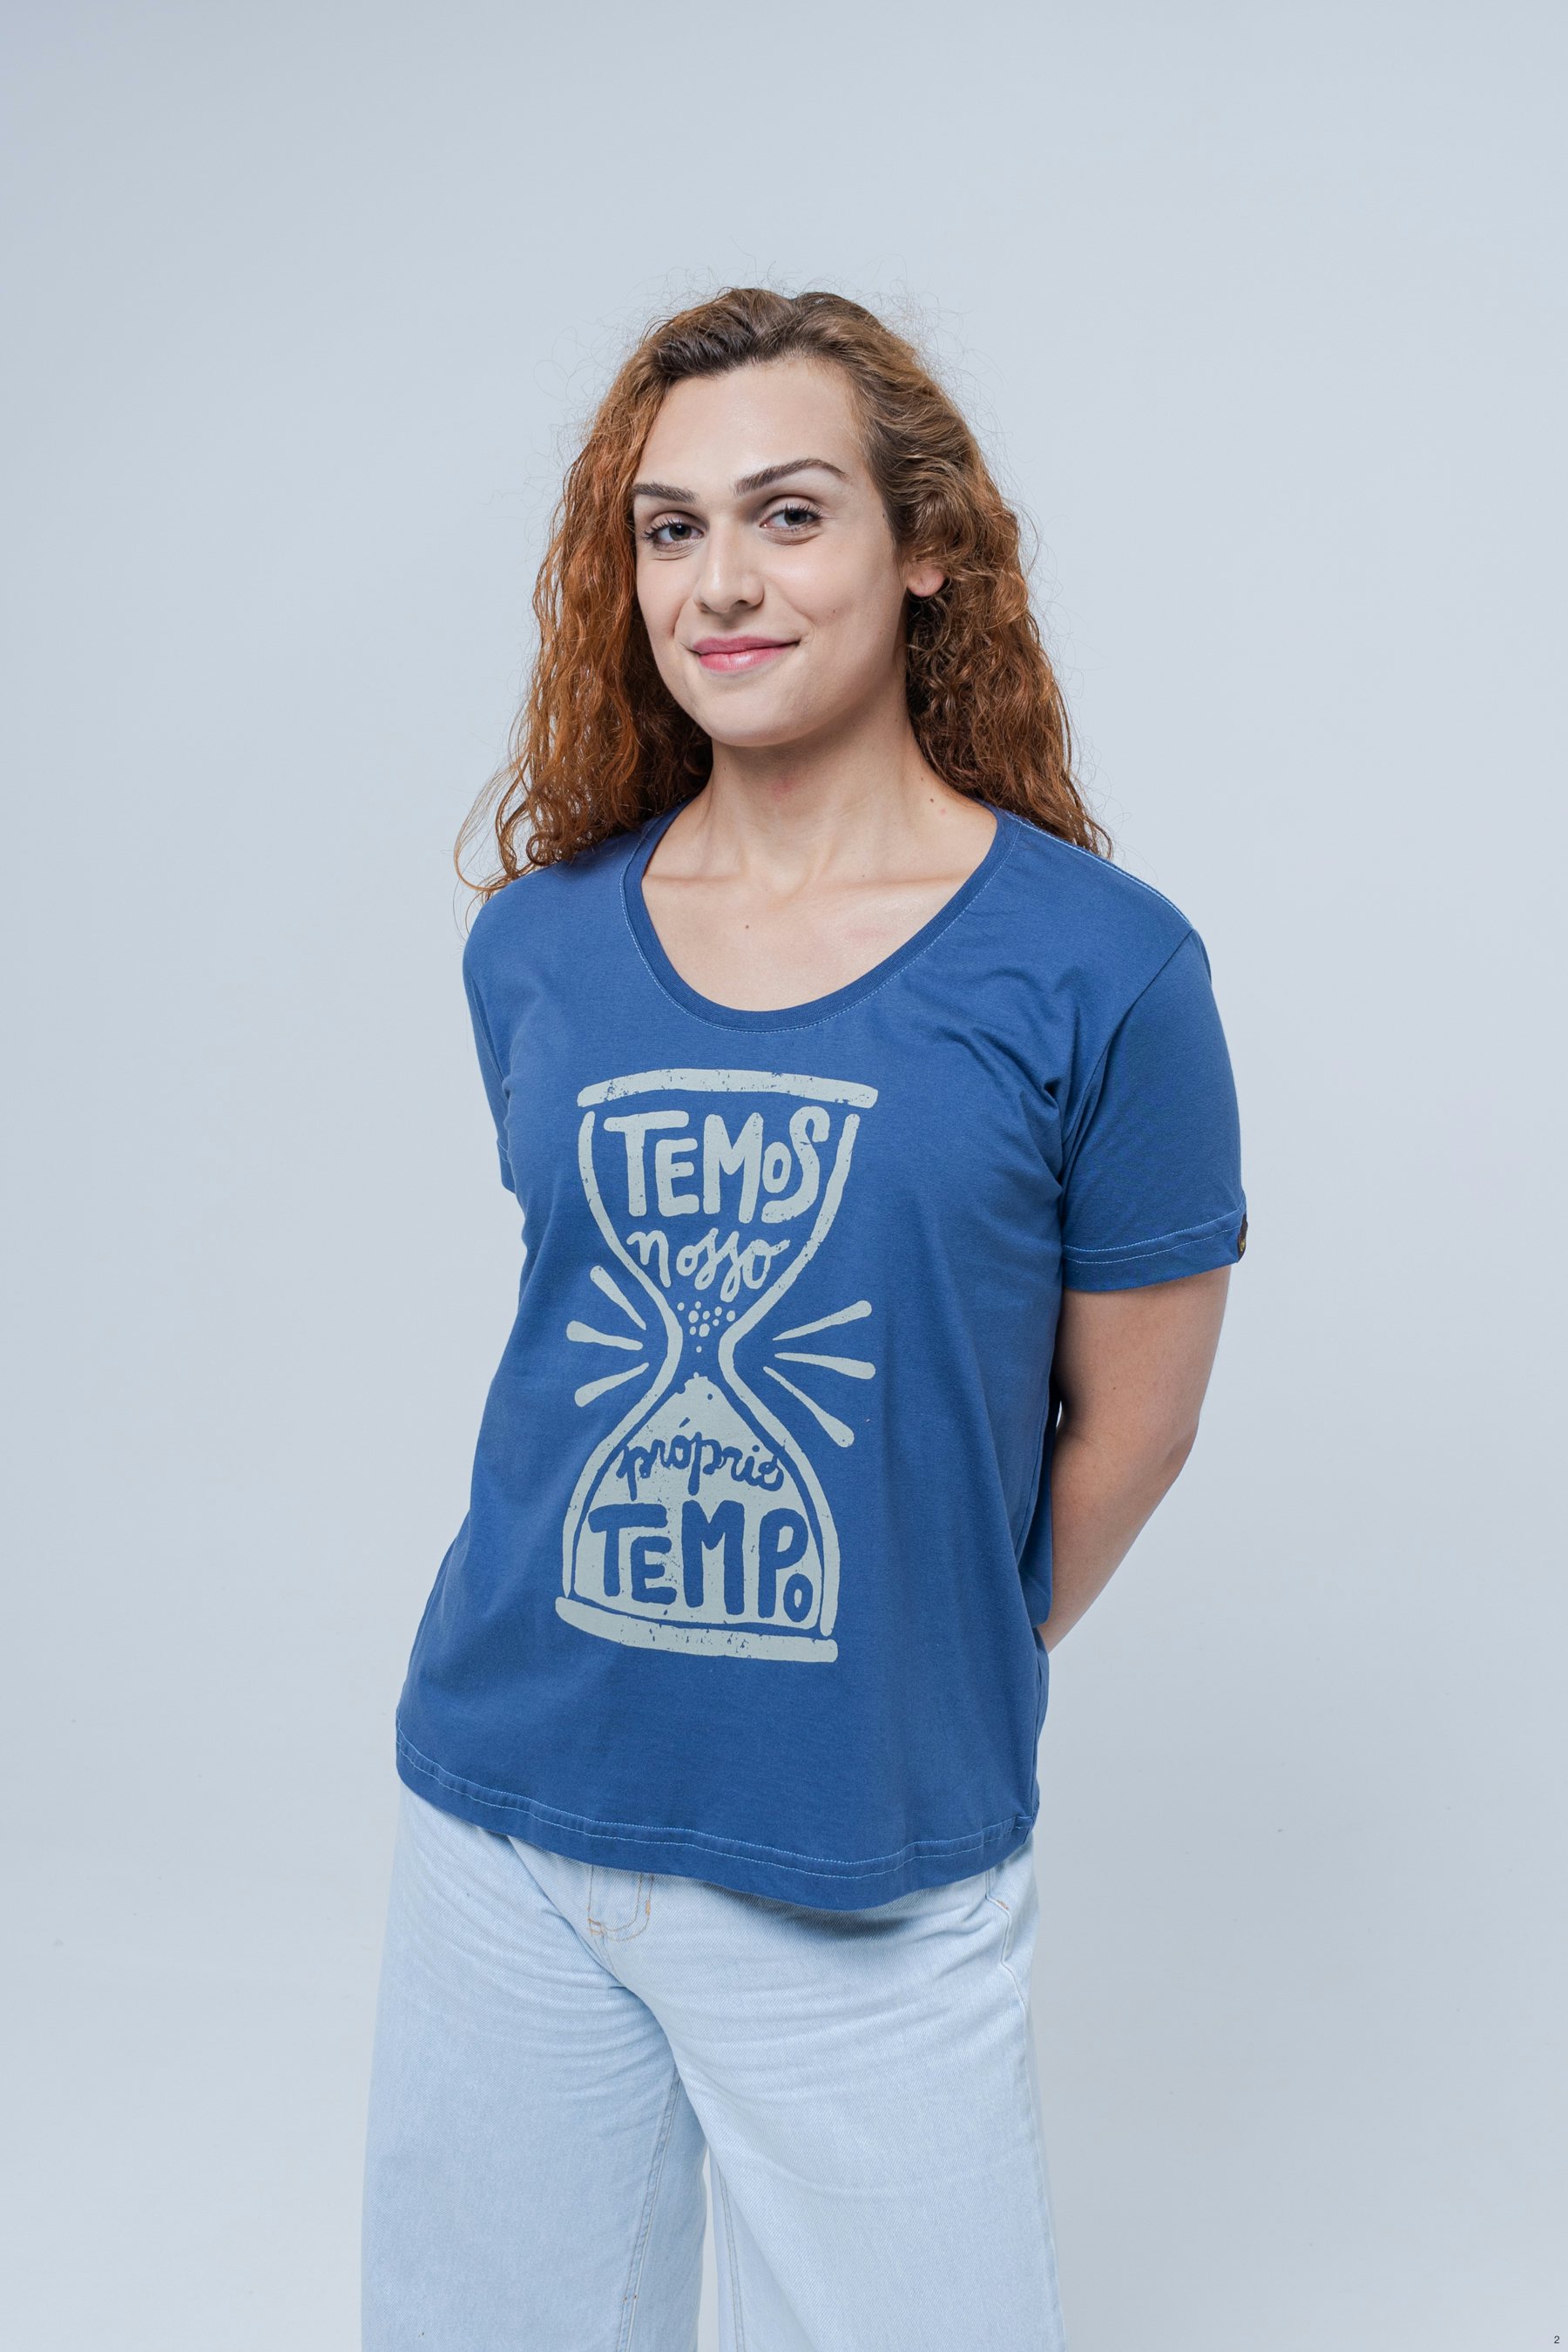 Camiseta Tempo Perdido Legioão Urbana - Unissex